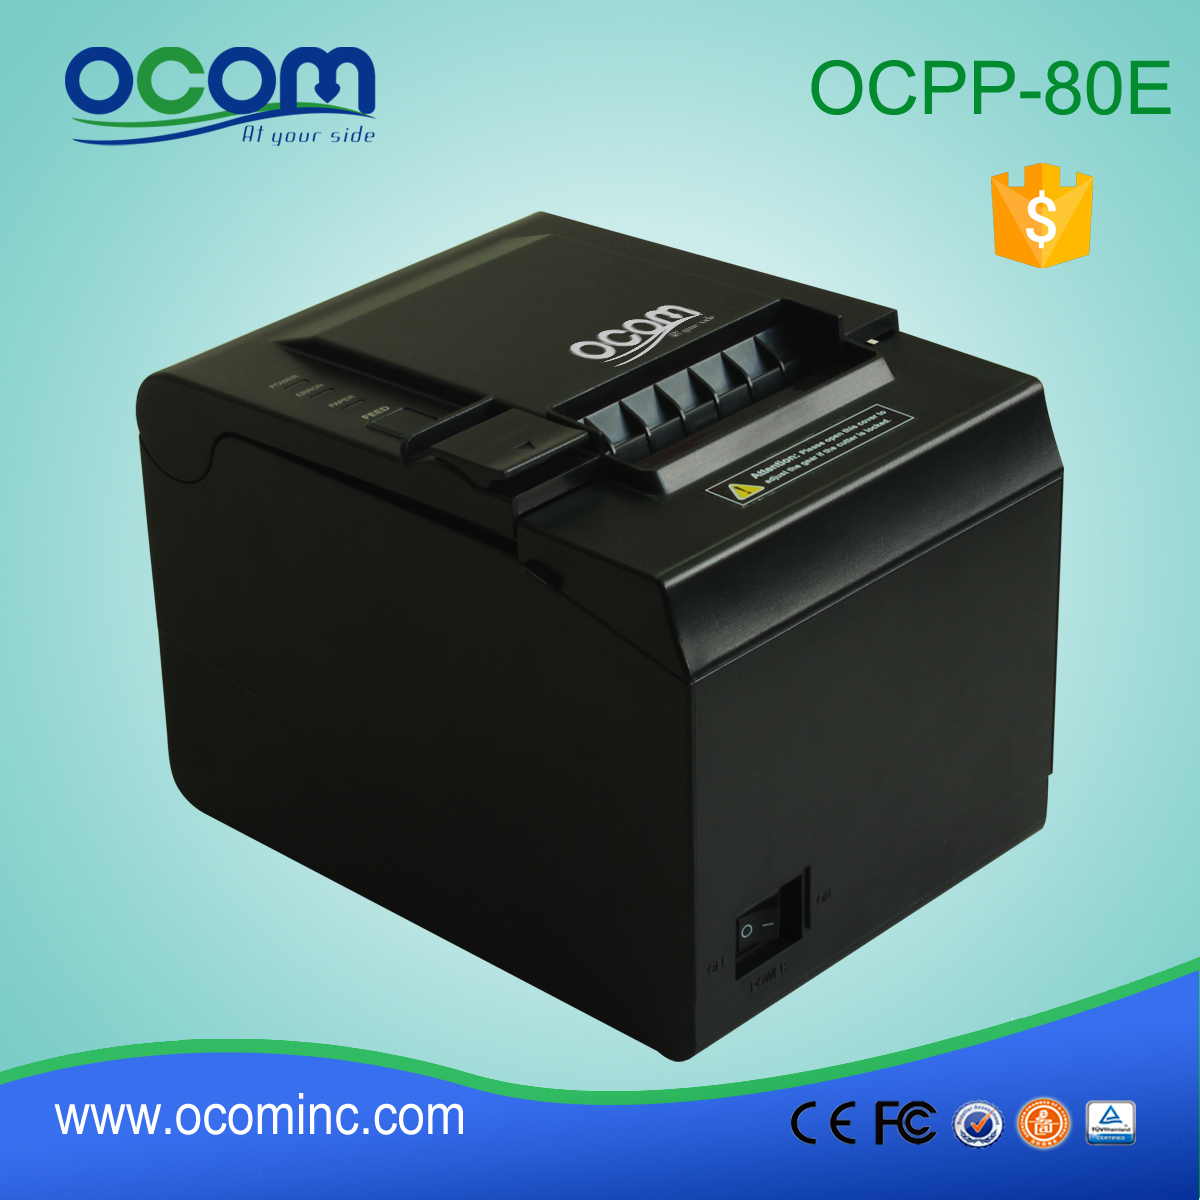 3 بوصة عالية الطباعة مطعم السرعة USB POS مطبخ طابعة حرارية (OCPP-80E)